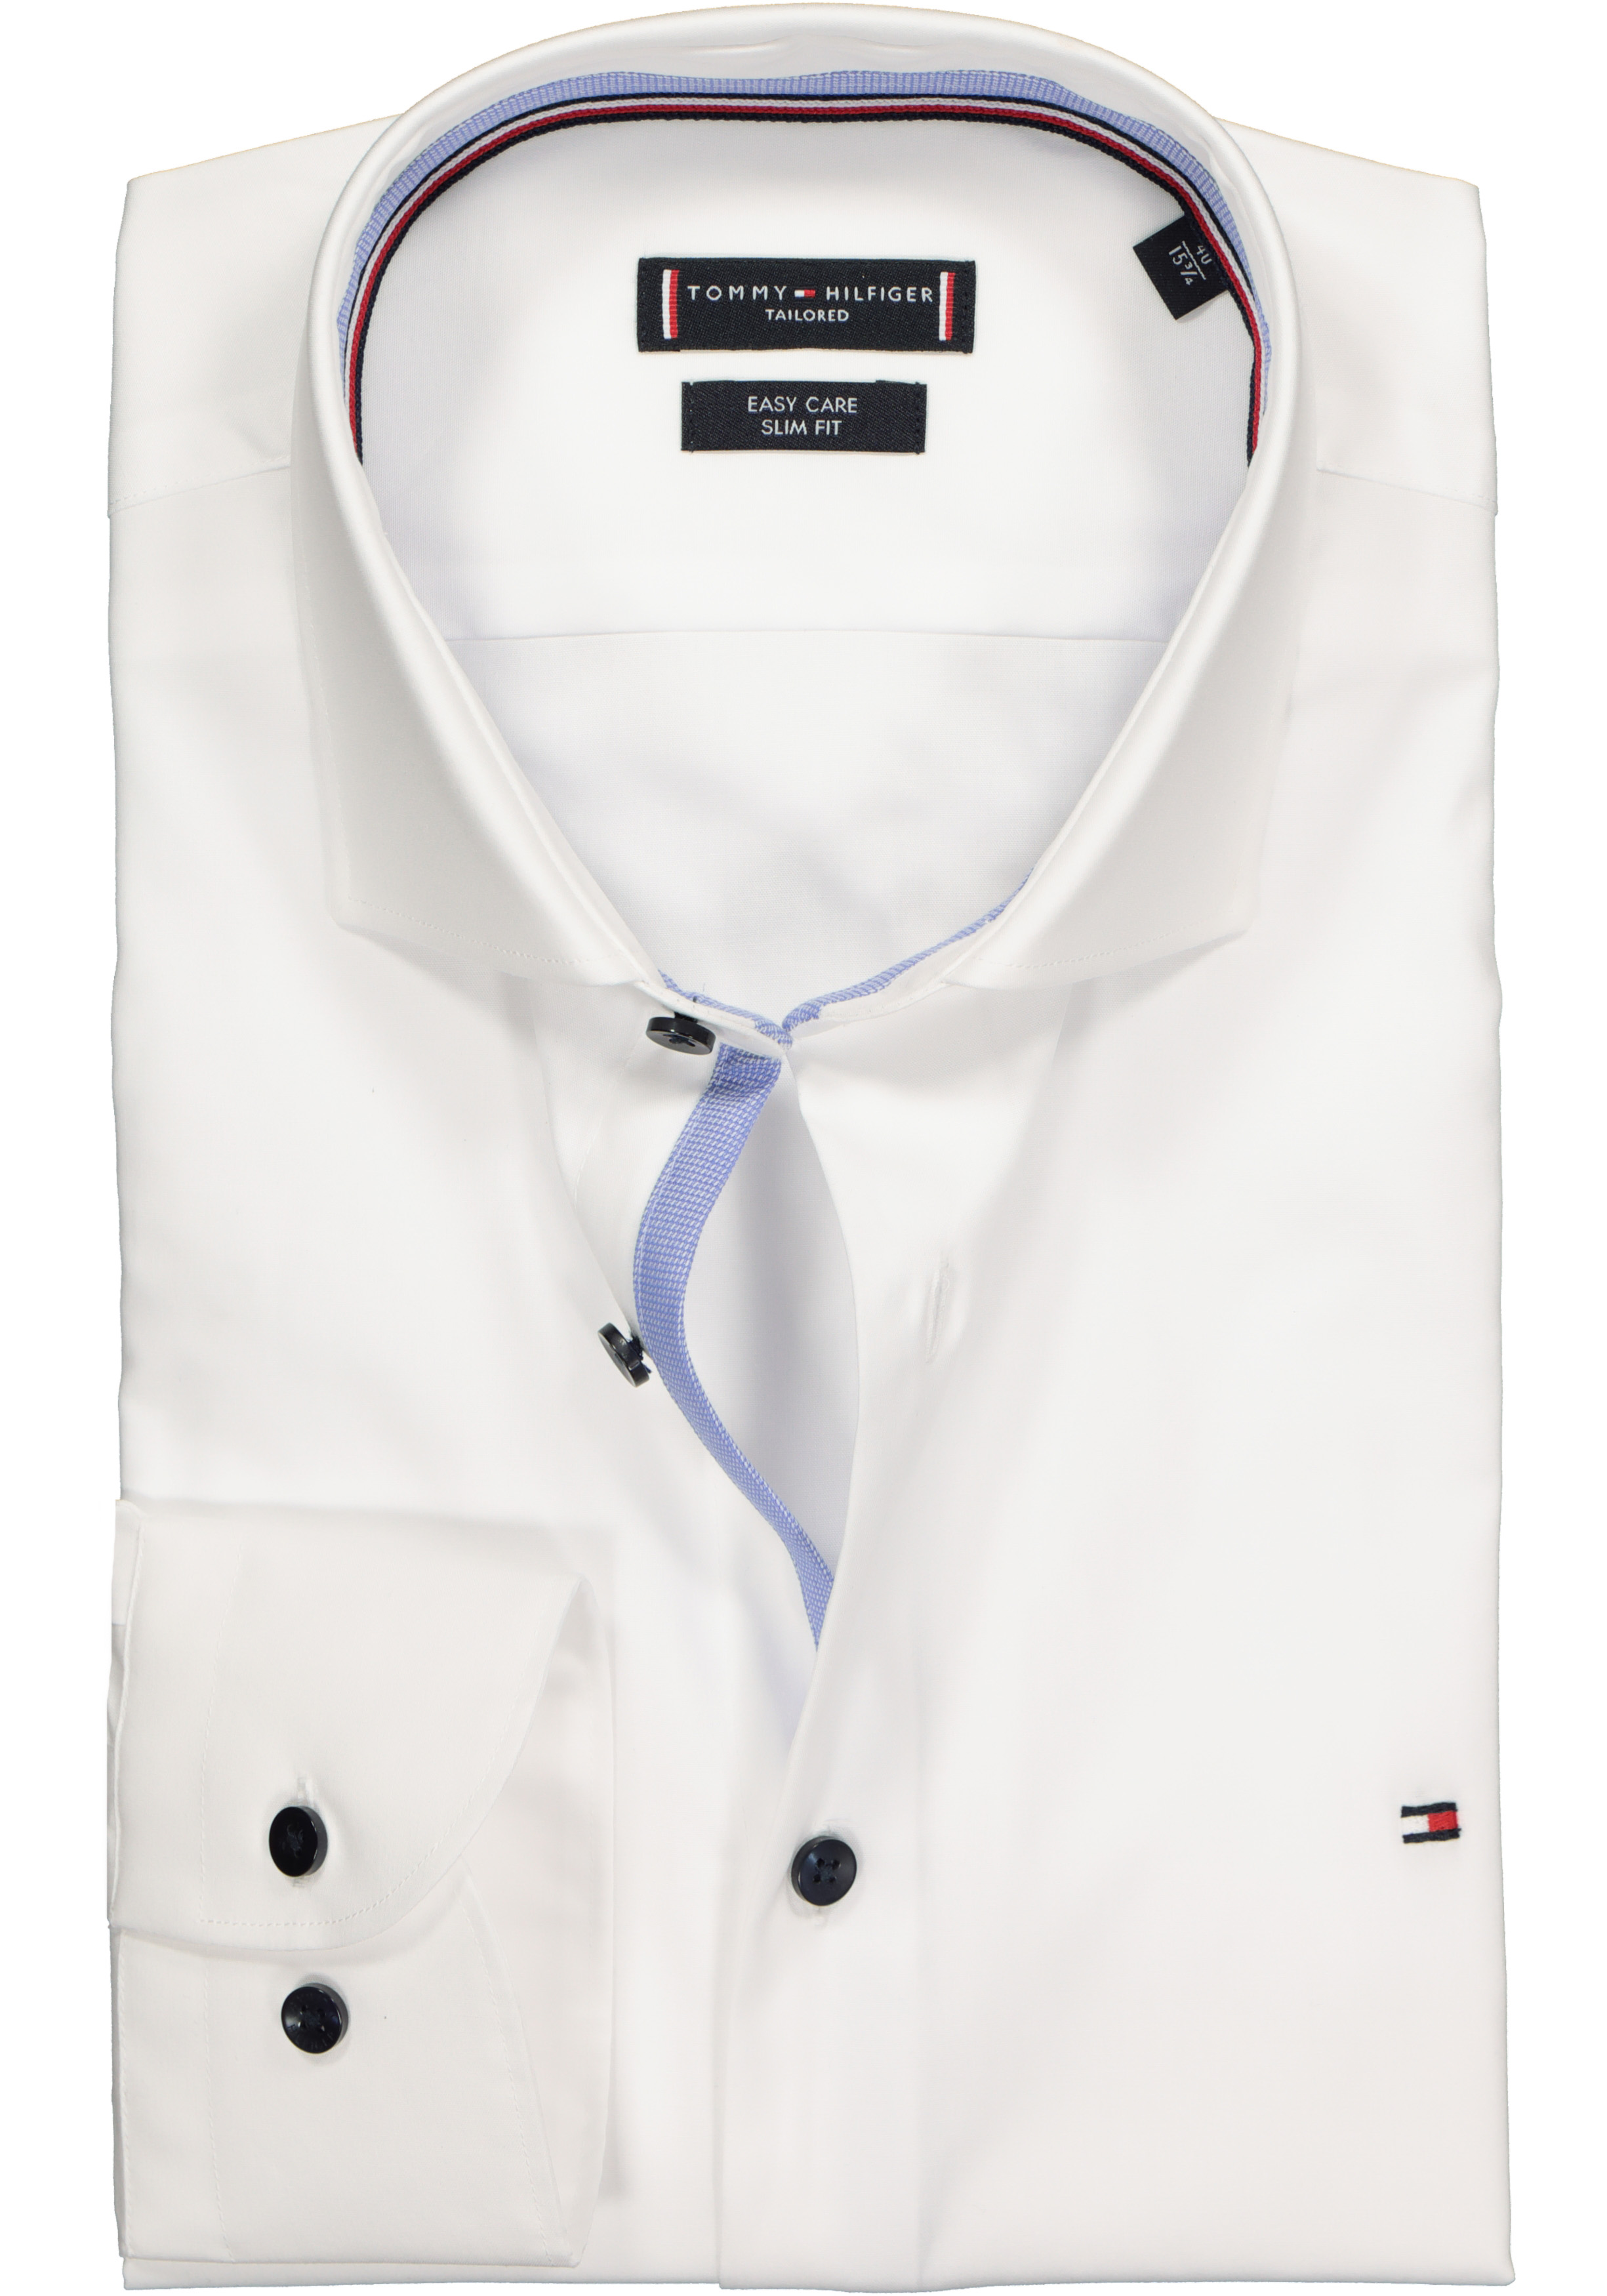 Reis bijnaam Voorbereiding Tommy Hilfiger Classic slim fit overhemd, wit (contrast) - Zomer SALE tot  50% korting